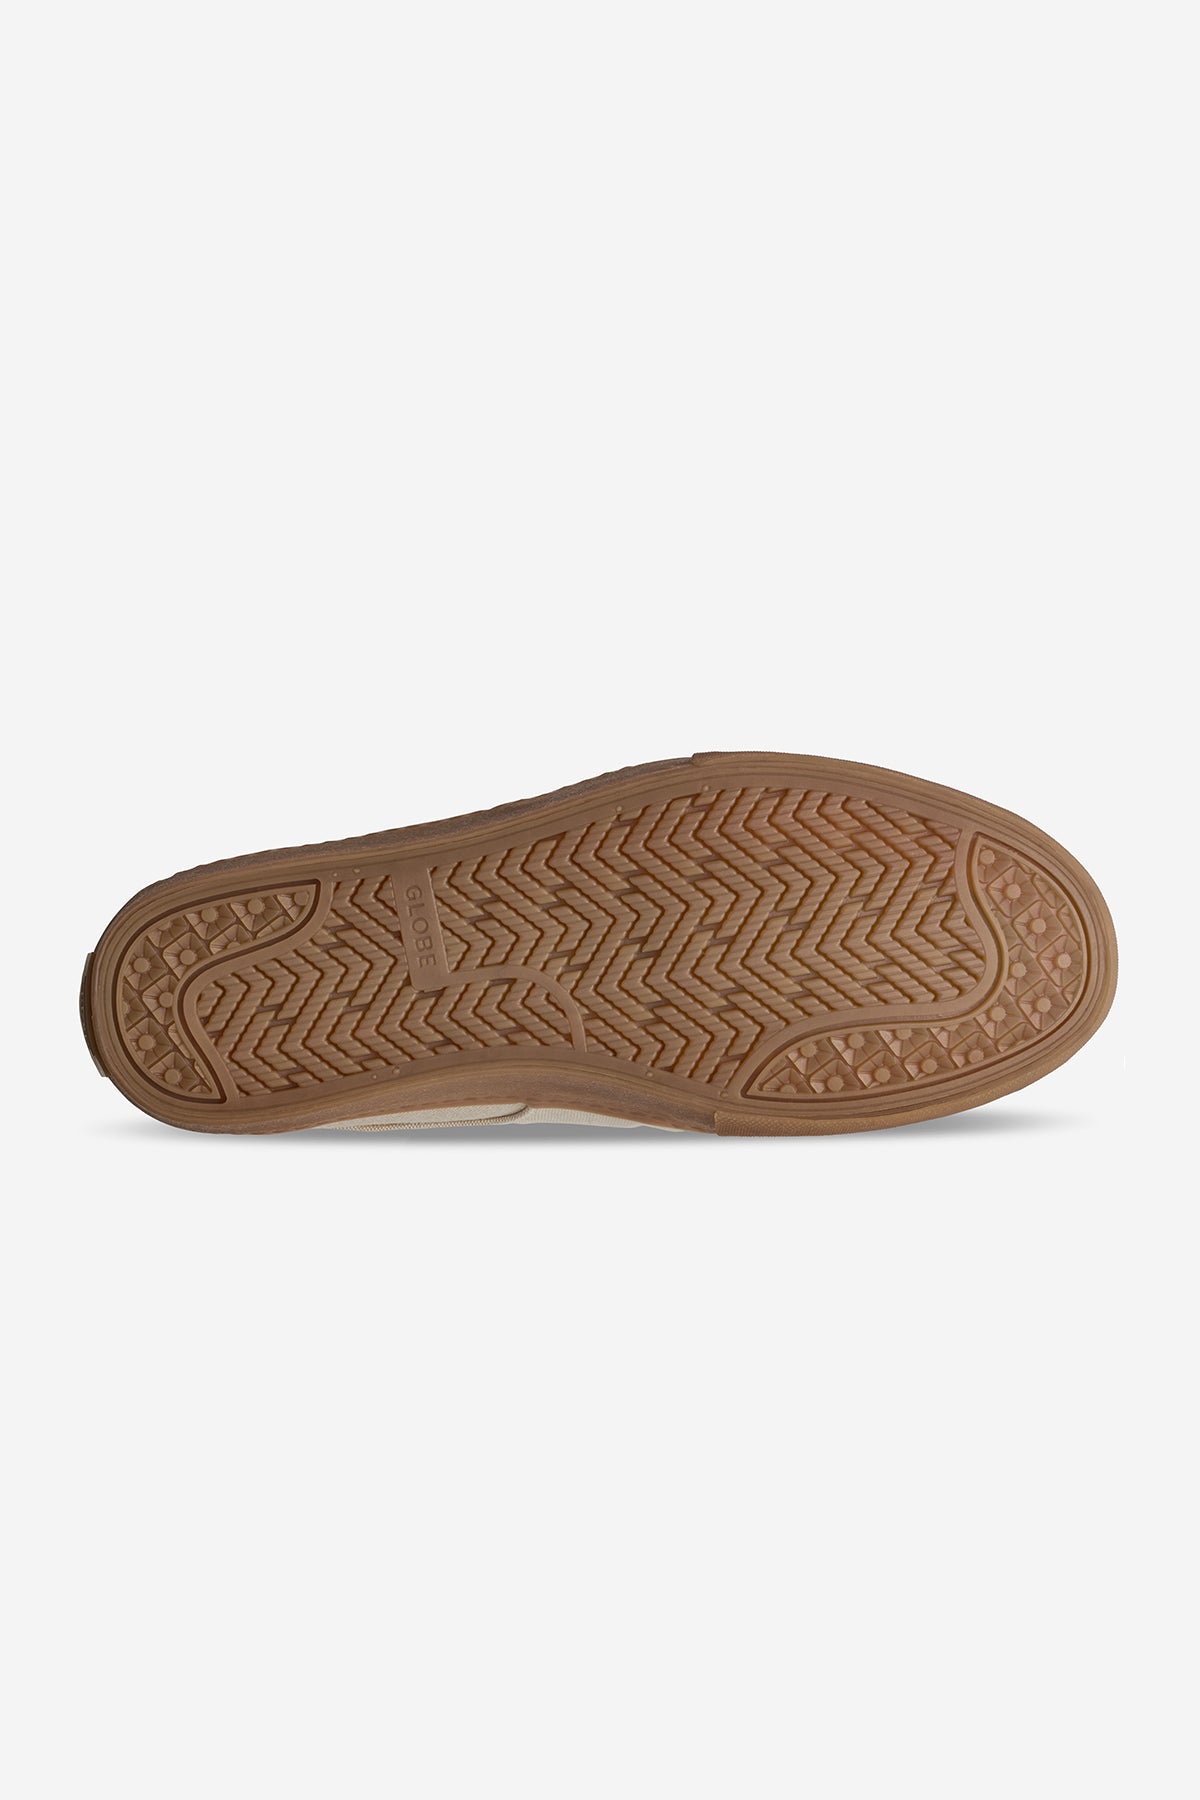 Globe - Liaizon - Hemp/Regrind Gum - skateboard Sapatos